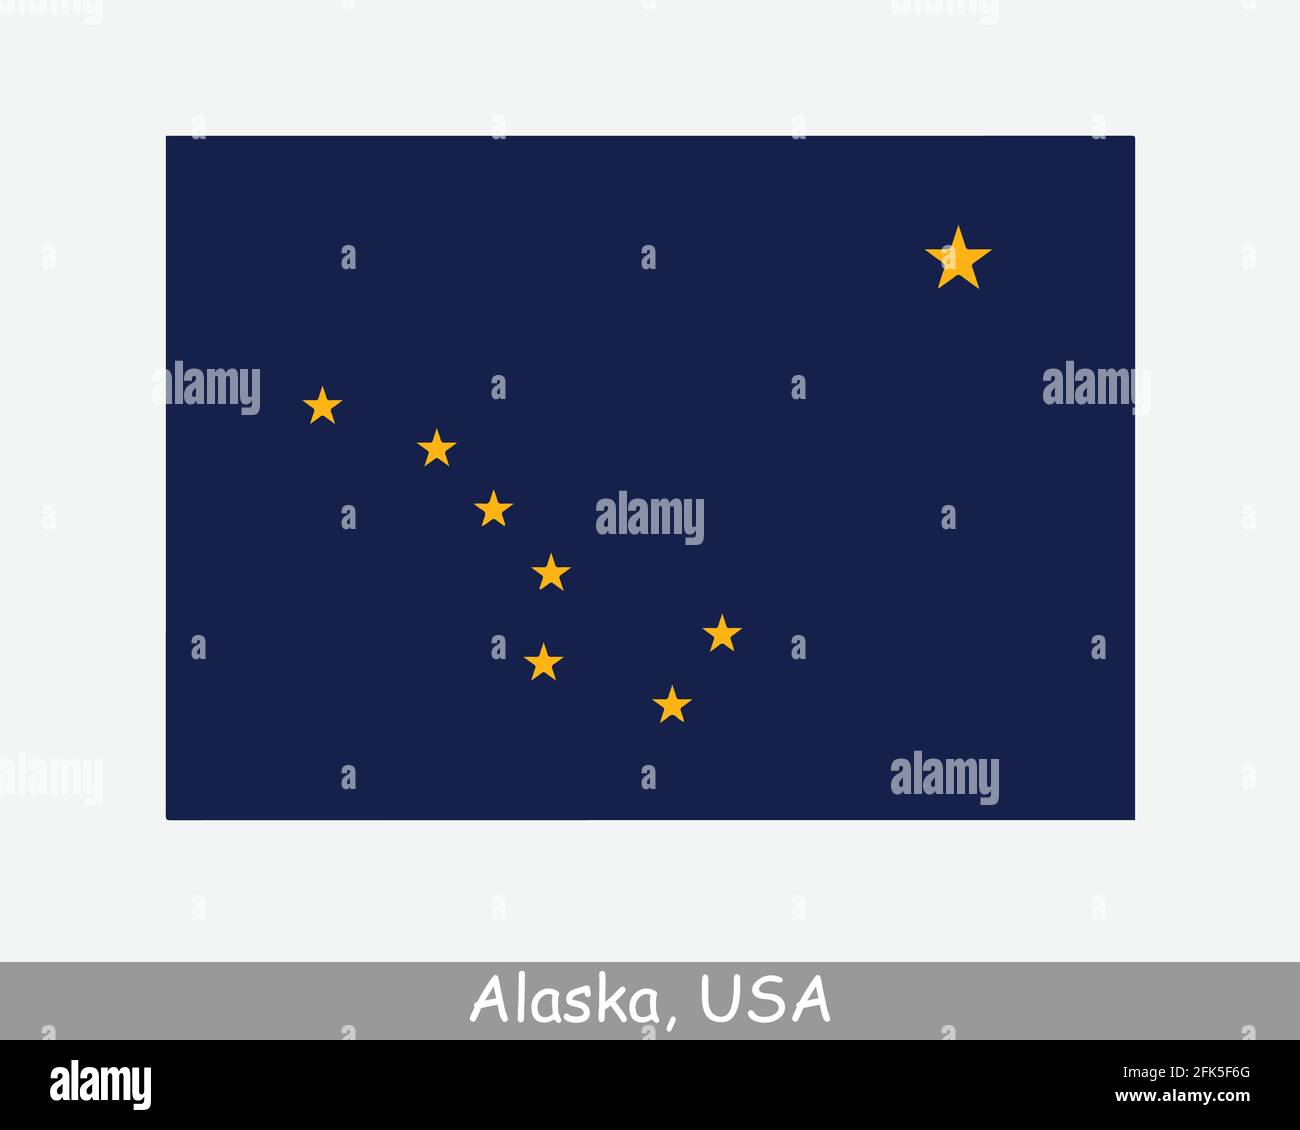 Alaska USA Staatsflagge. Flagge von AK, USA isoliert auf weißem Hintergrund. Vereinigte Staaten, Amerika, American, Vereinigte Staaten von Amerika, US-Bundesstaat. Vektorgrafik Stock Vektor